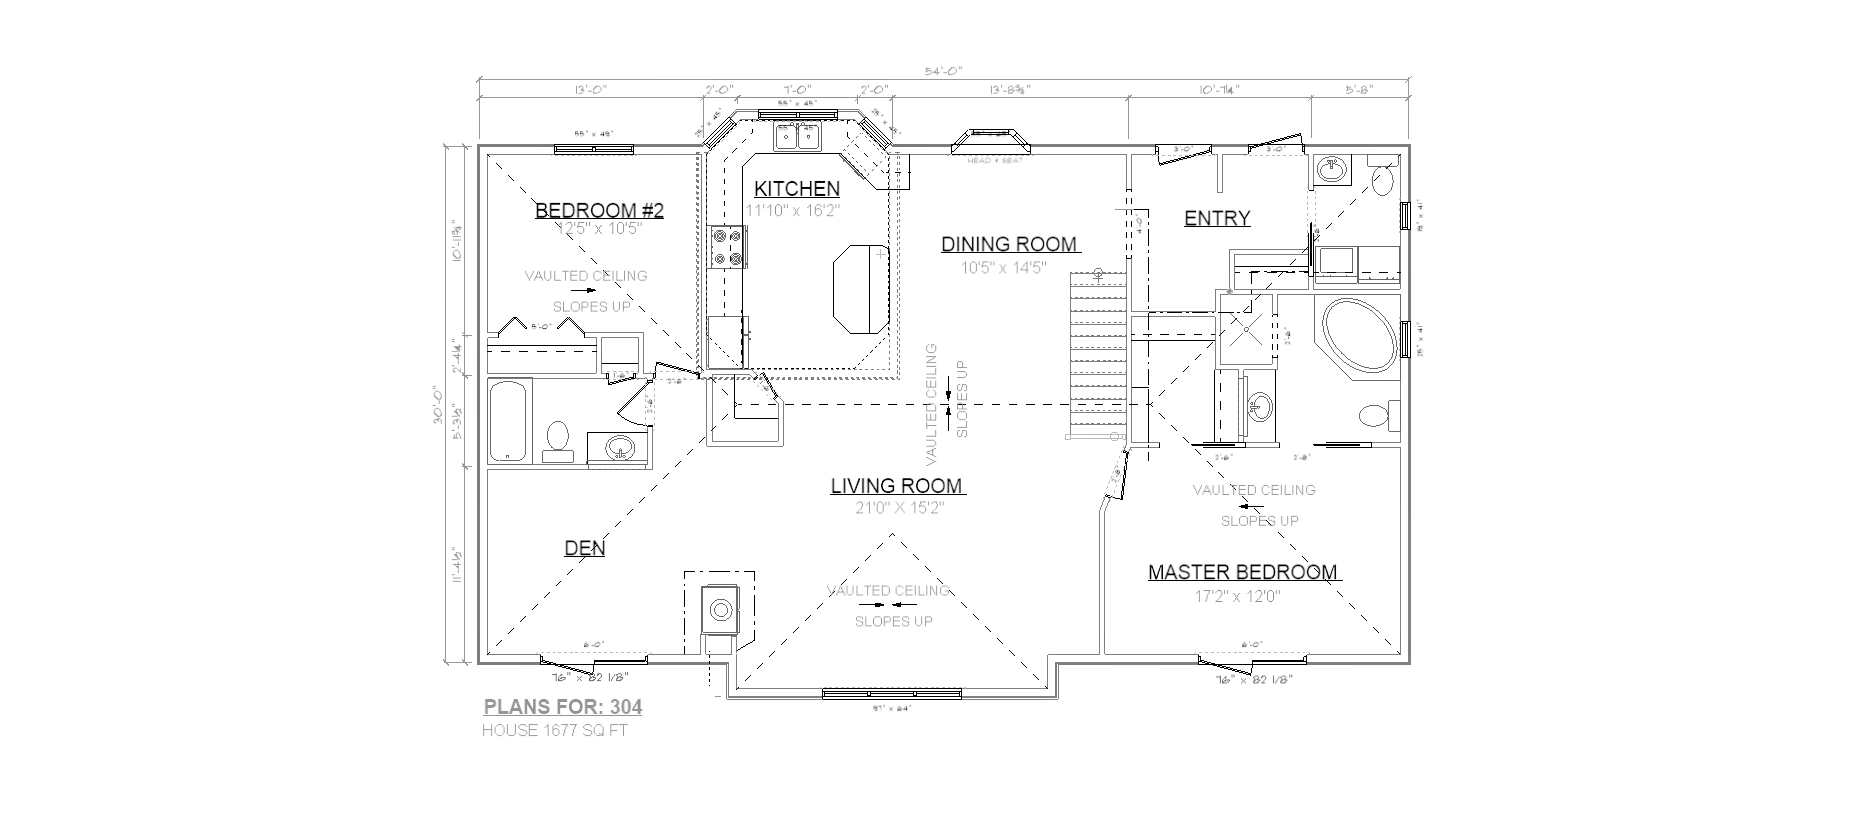 Penner Homes Floor Plan Id: 304